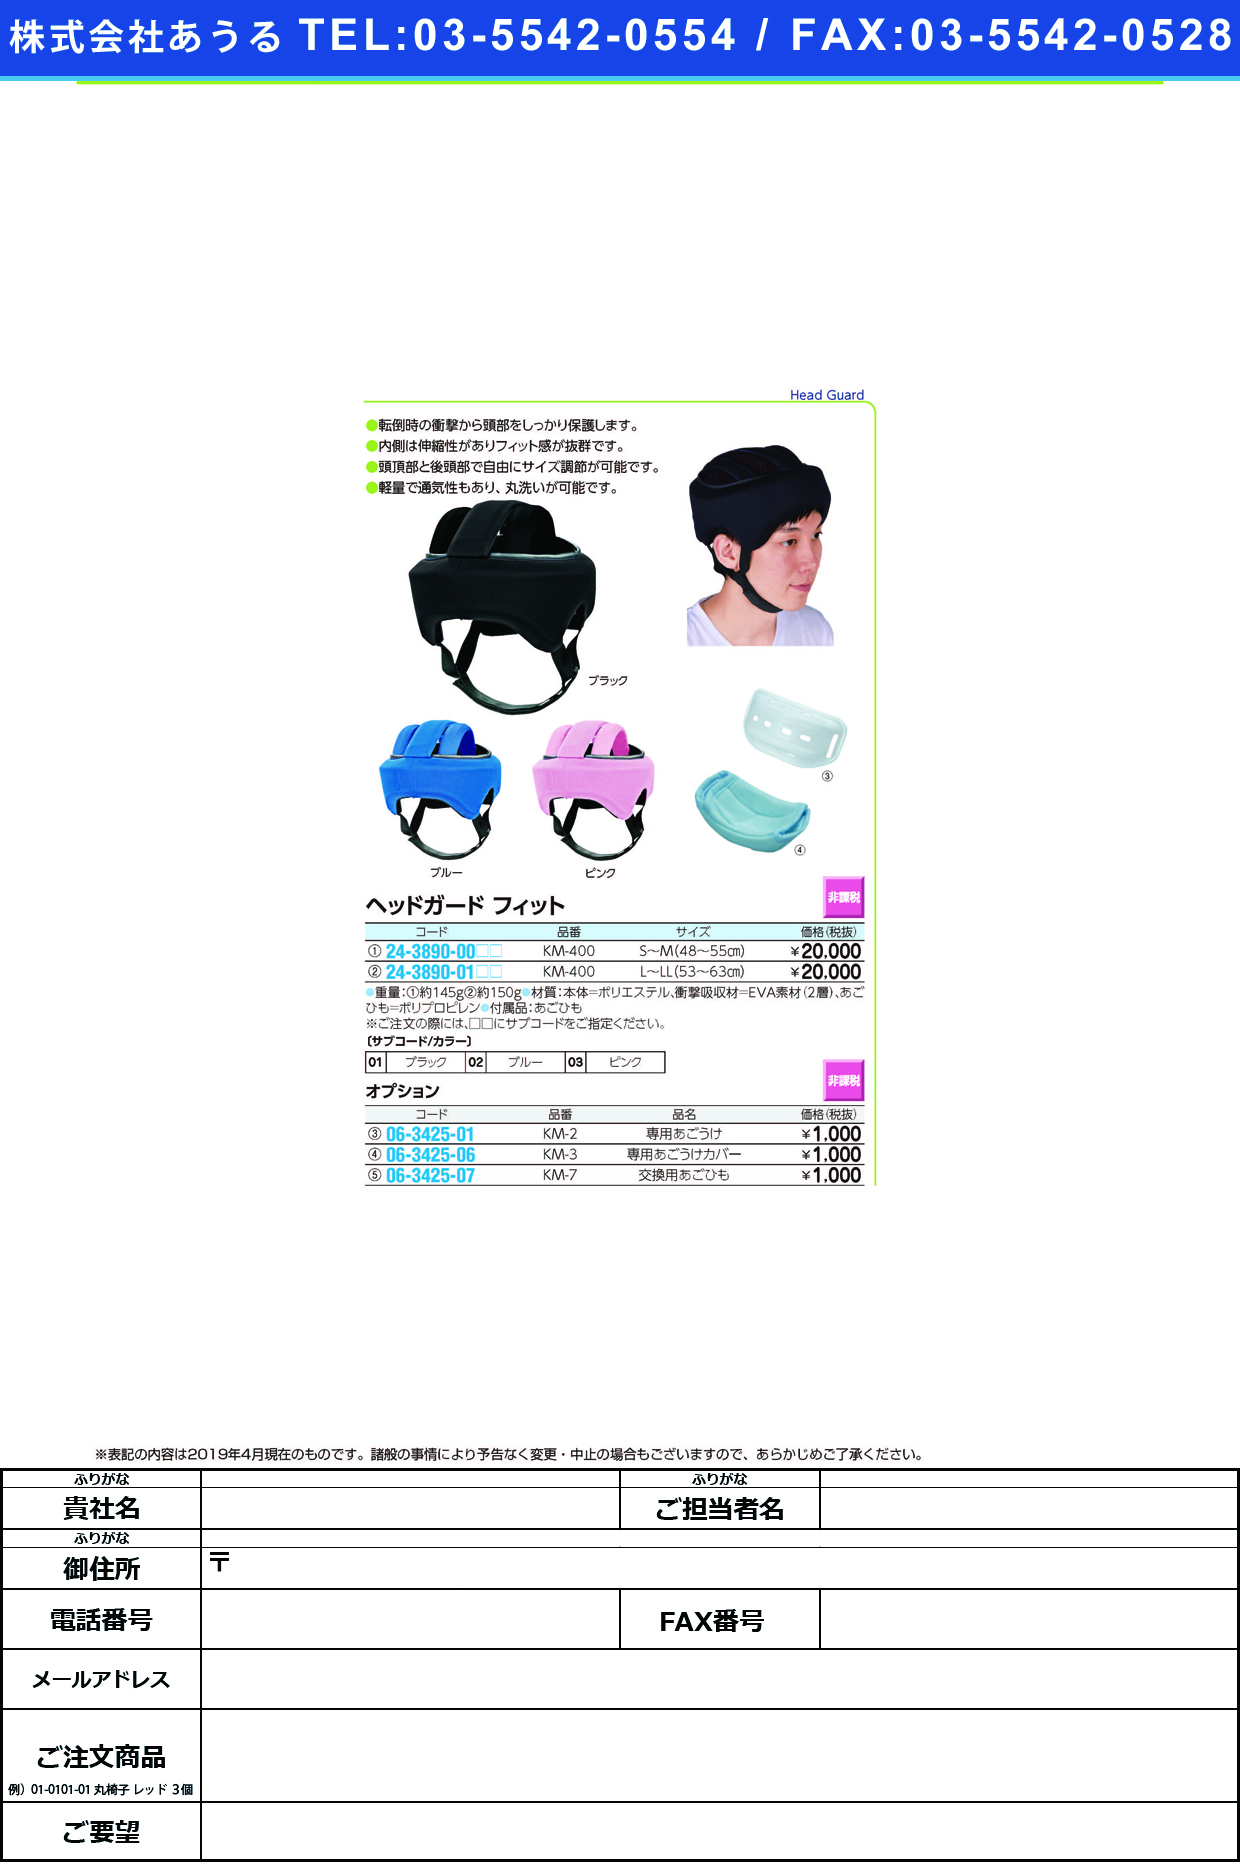 (24-3890-01)ヘッドガードフィット KM-400(L-LL) ﾍｯﾄﾞｶﾞｰﾄﾞﾌｨｯﾄ ピンク【1個単位】【2019年カタログ商品】